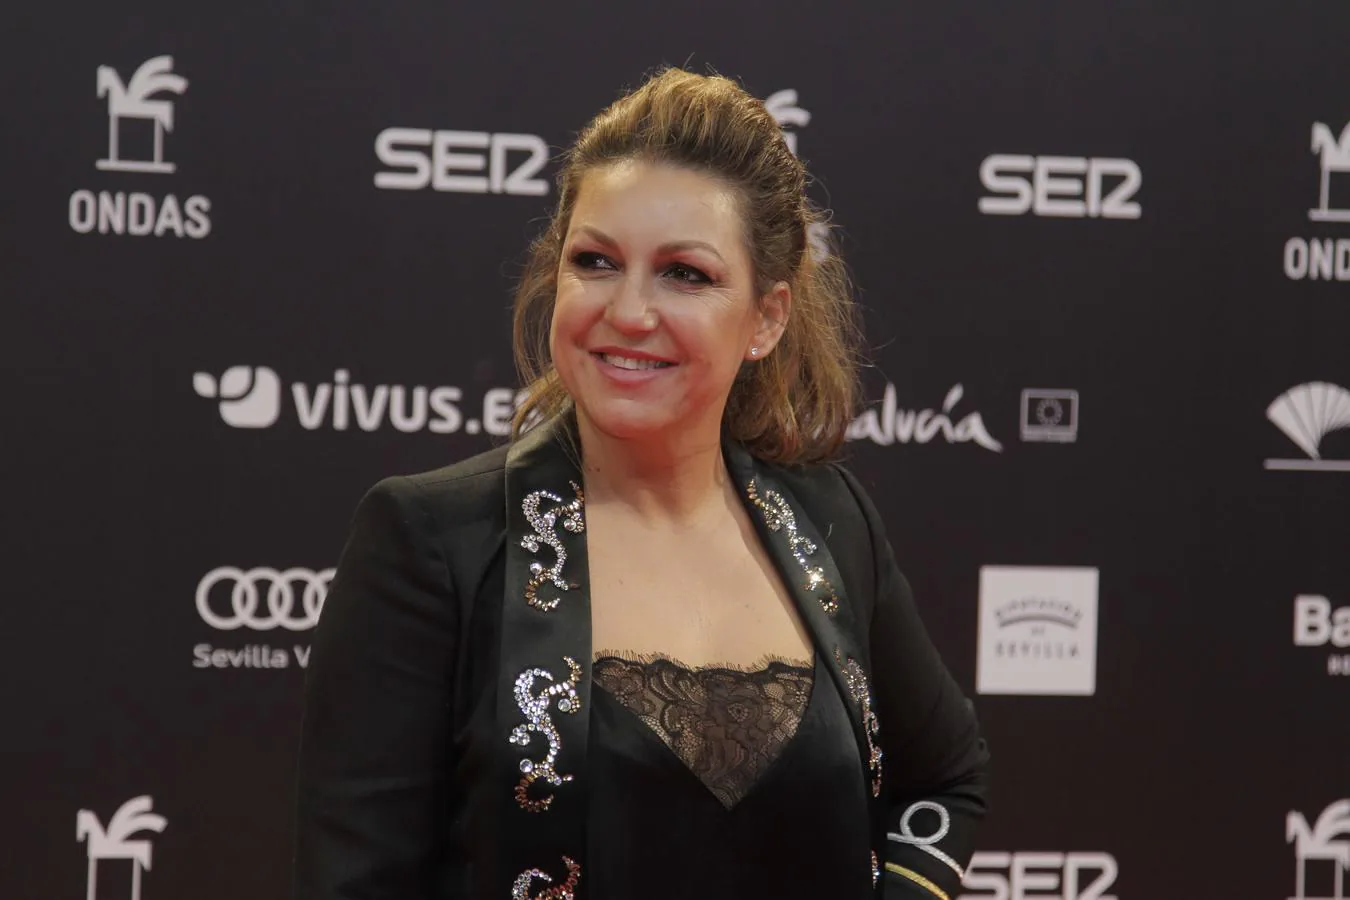 La gala de entrega de los Premios Ondas en Sevilla